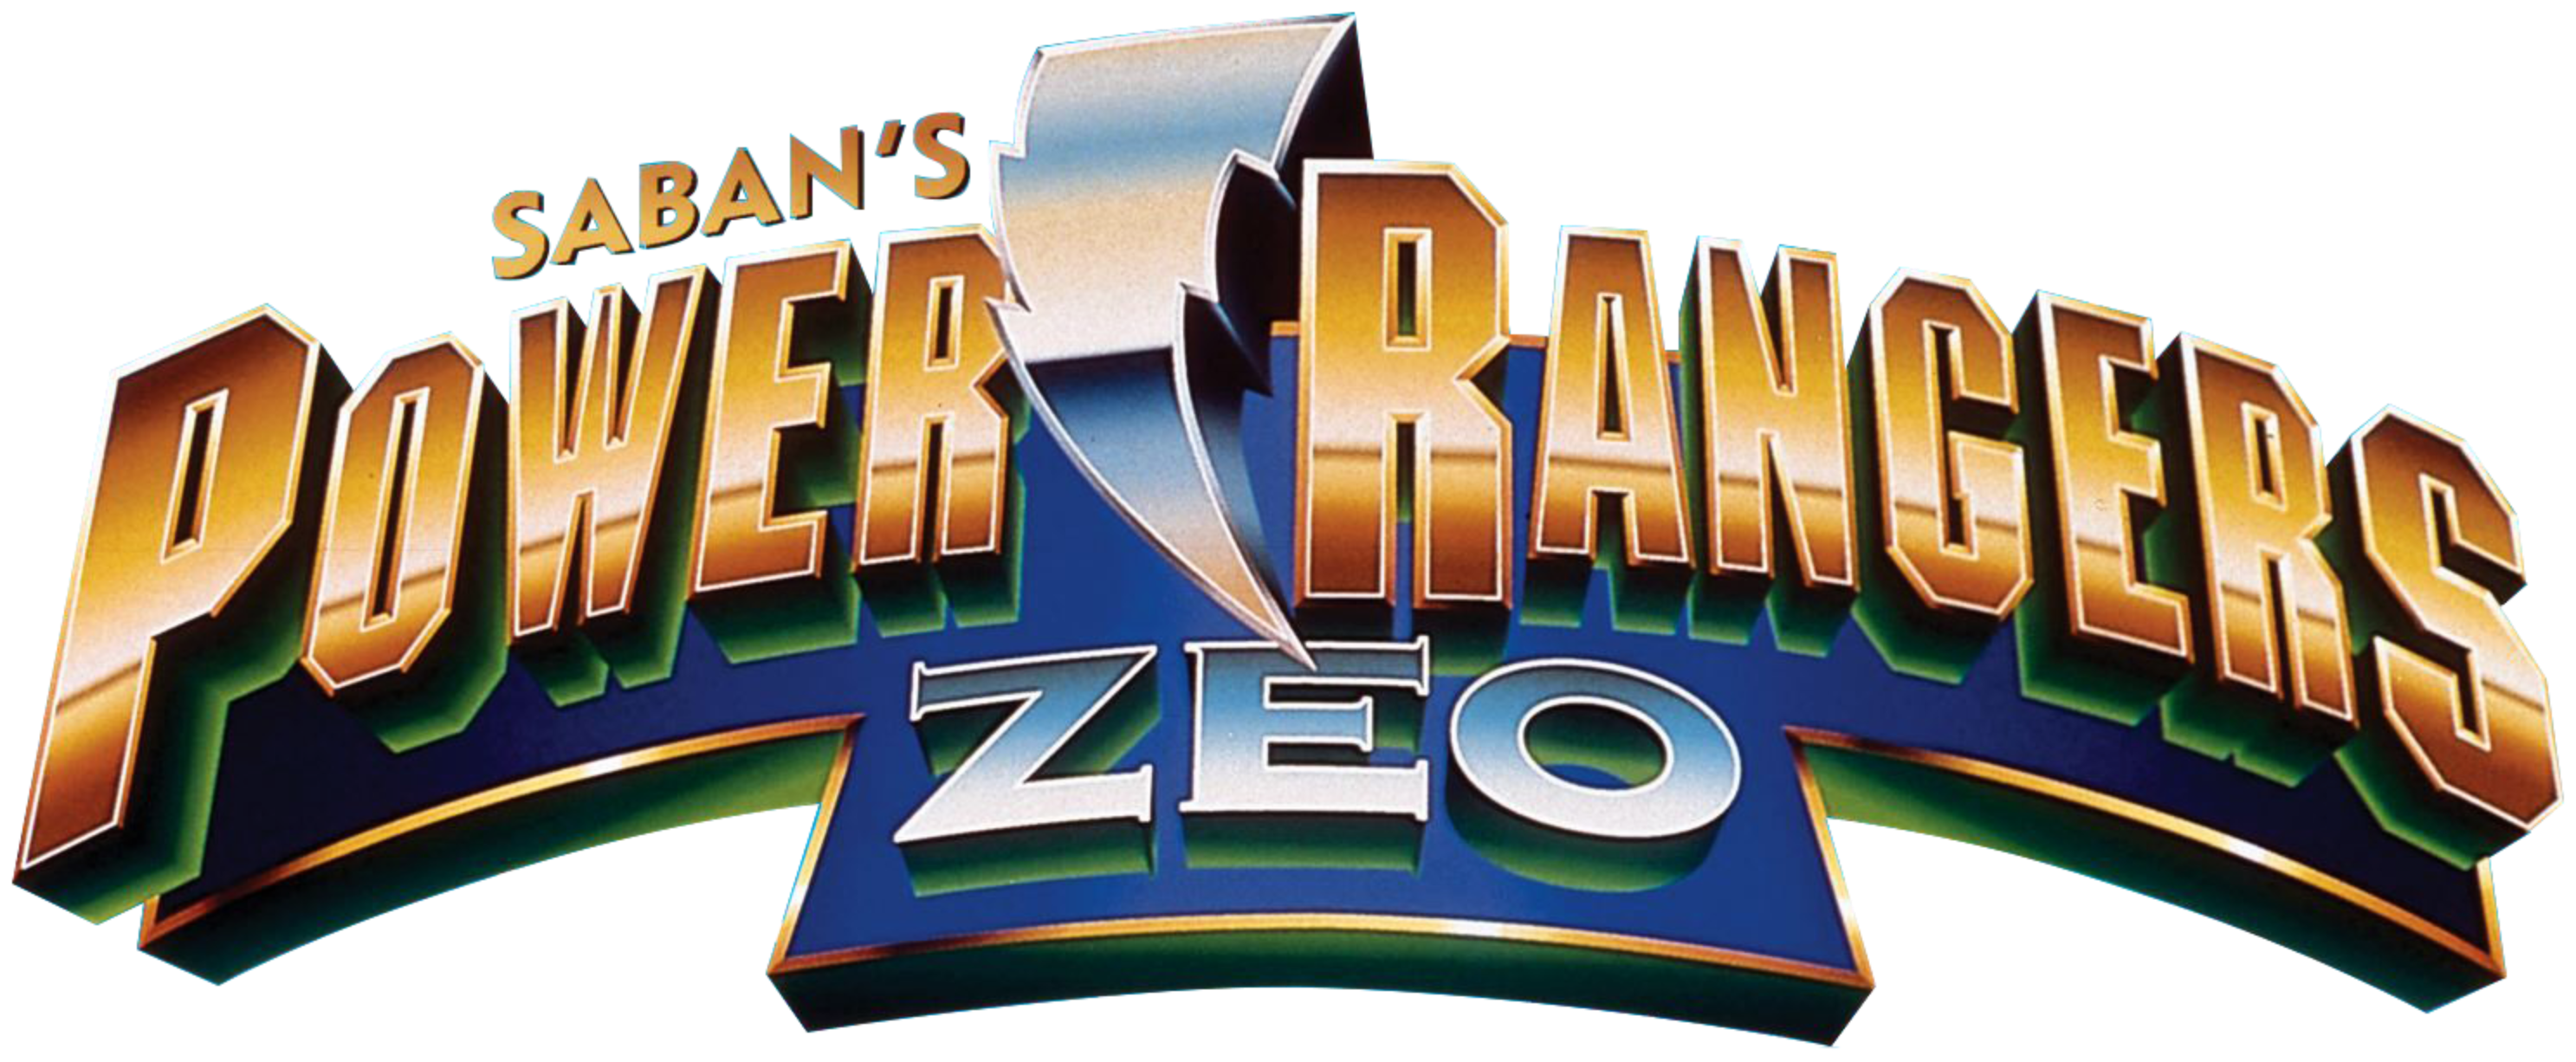 Power Rangers Zeo Complete 